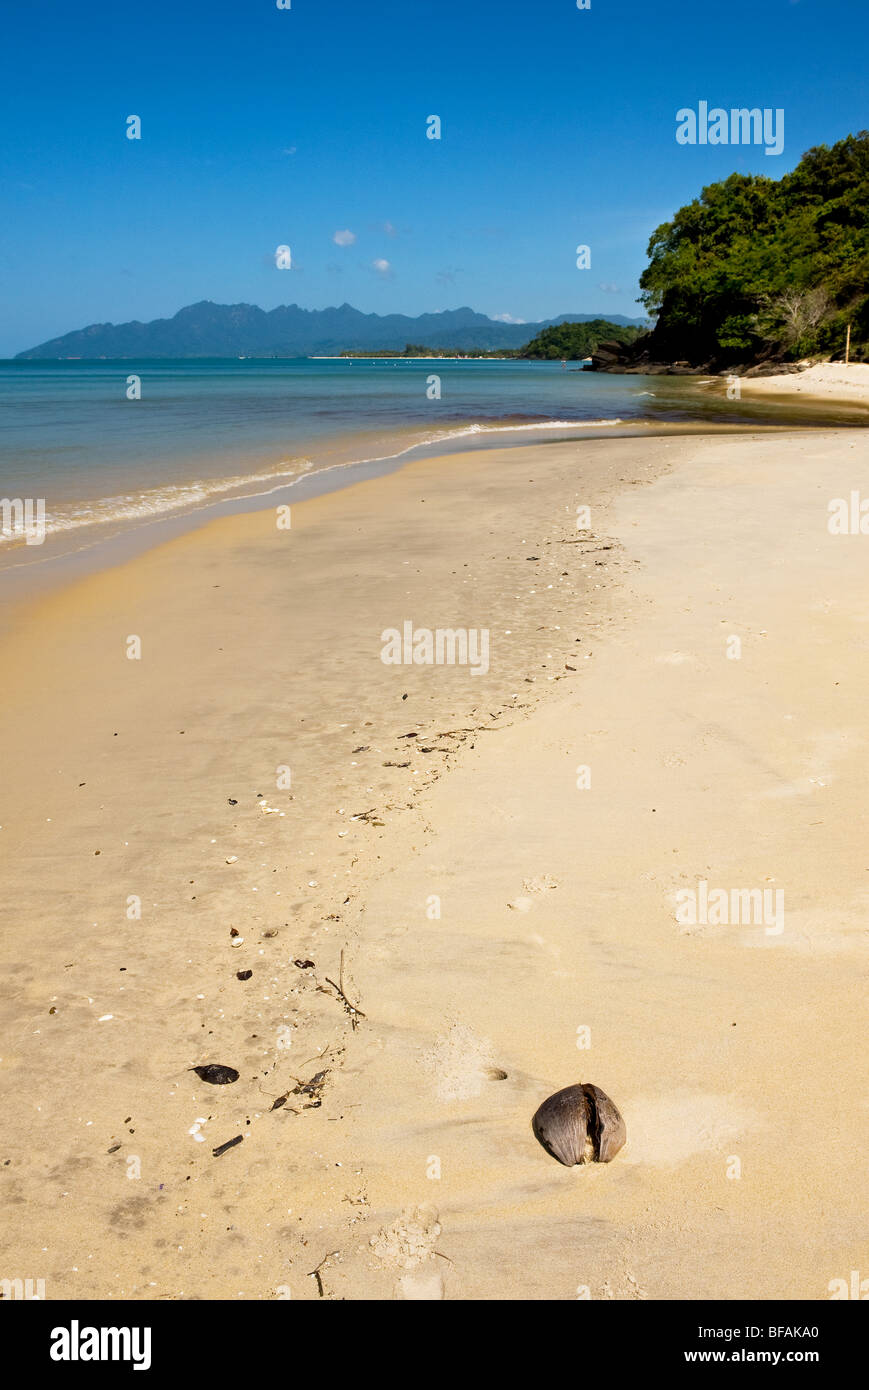 Pantai Tengah Beach sur la côte de Langkawi en Malaisie. Banque D'Images